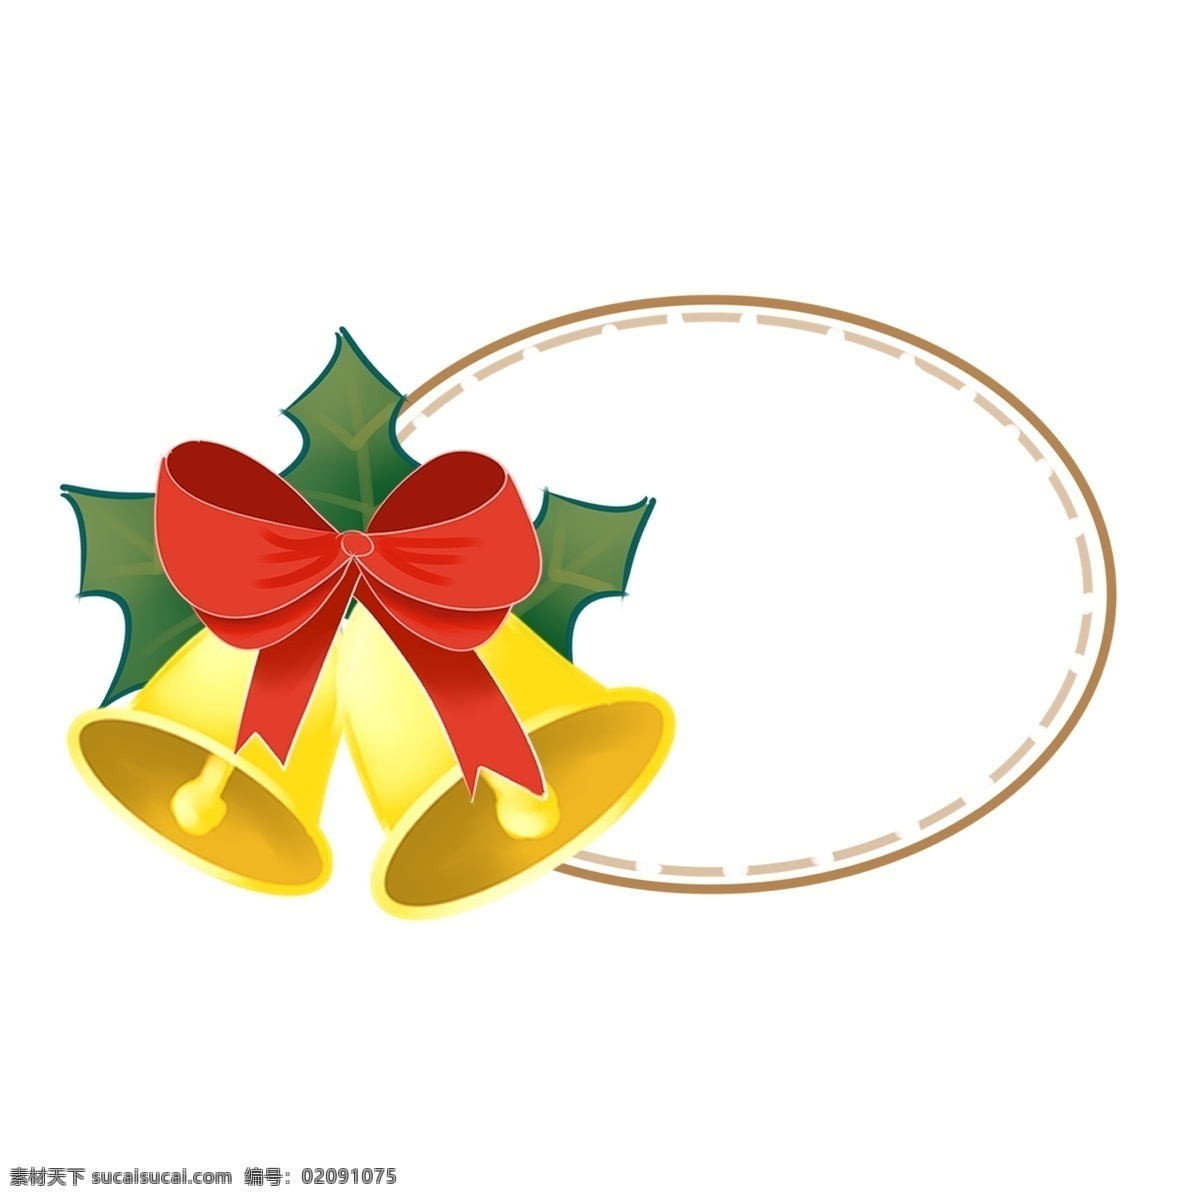 圣诞节 圆形 铃铛 边框 红色的蝴蝶结 边框插画 圣诞节边框 黄色的边框 黄色的铃铛 悦耳的铃声